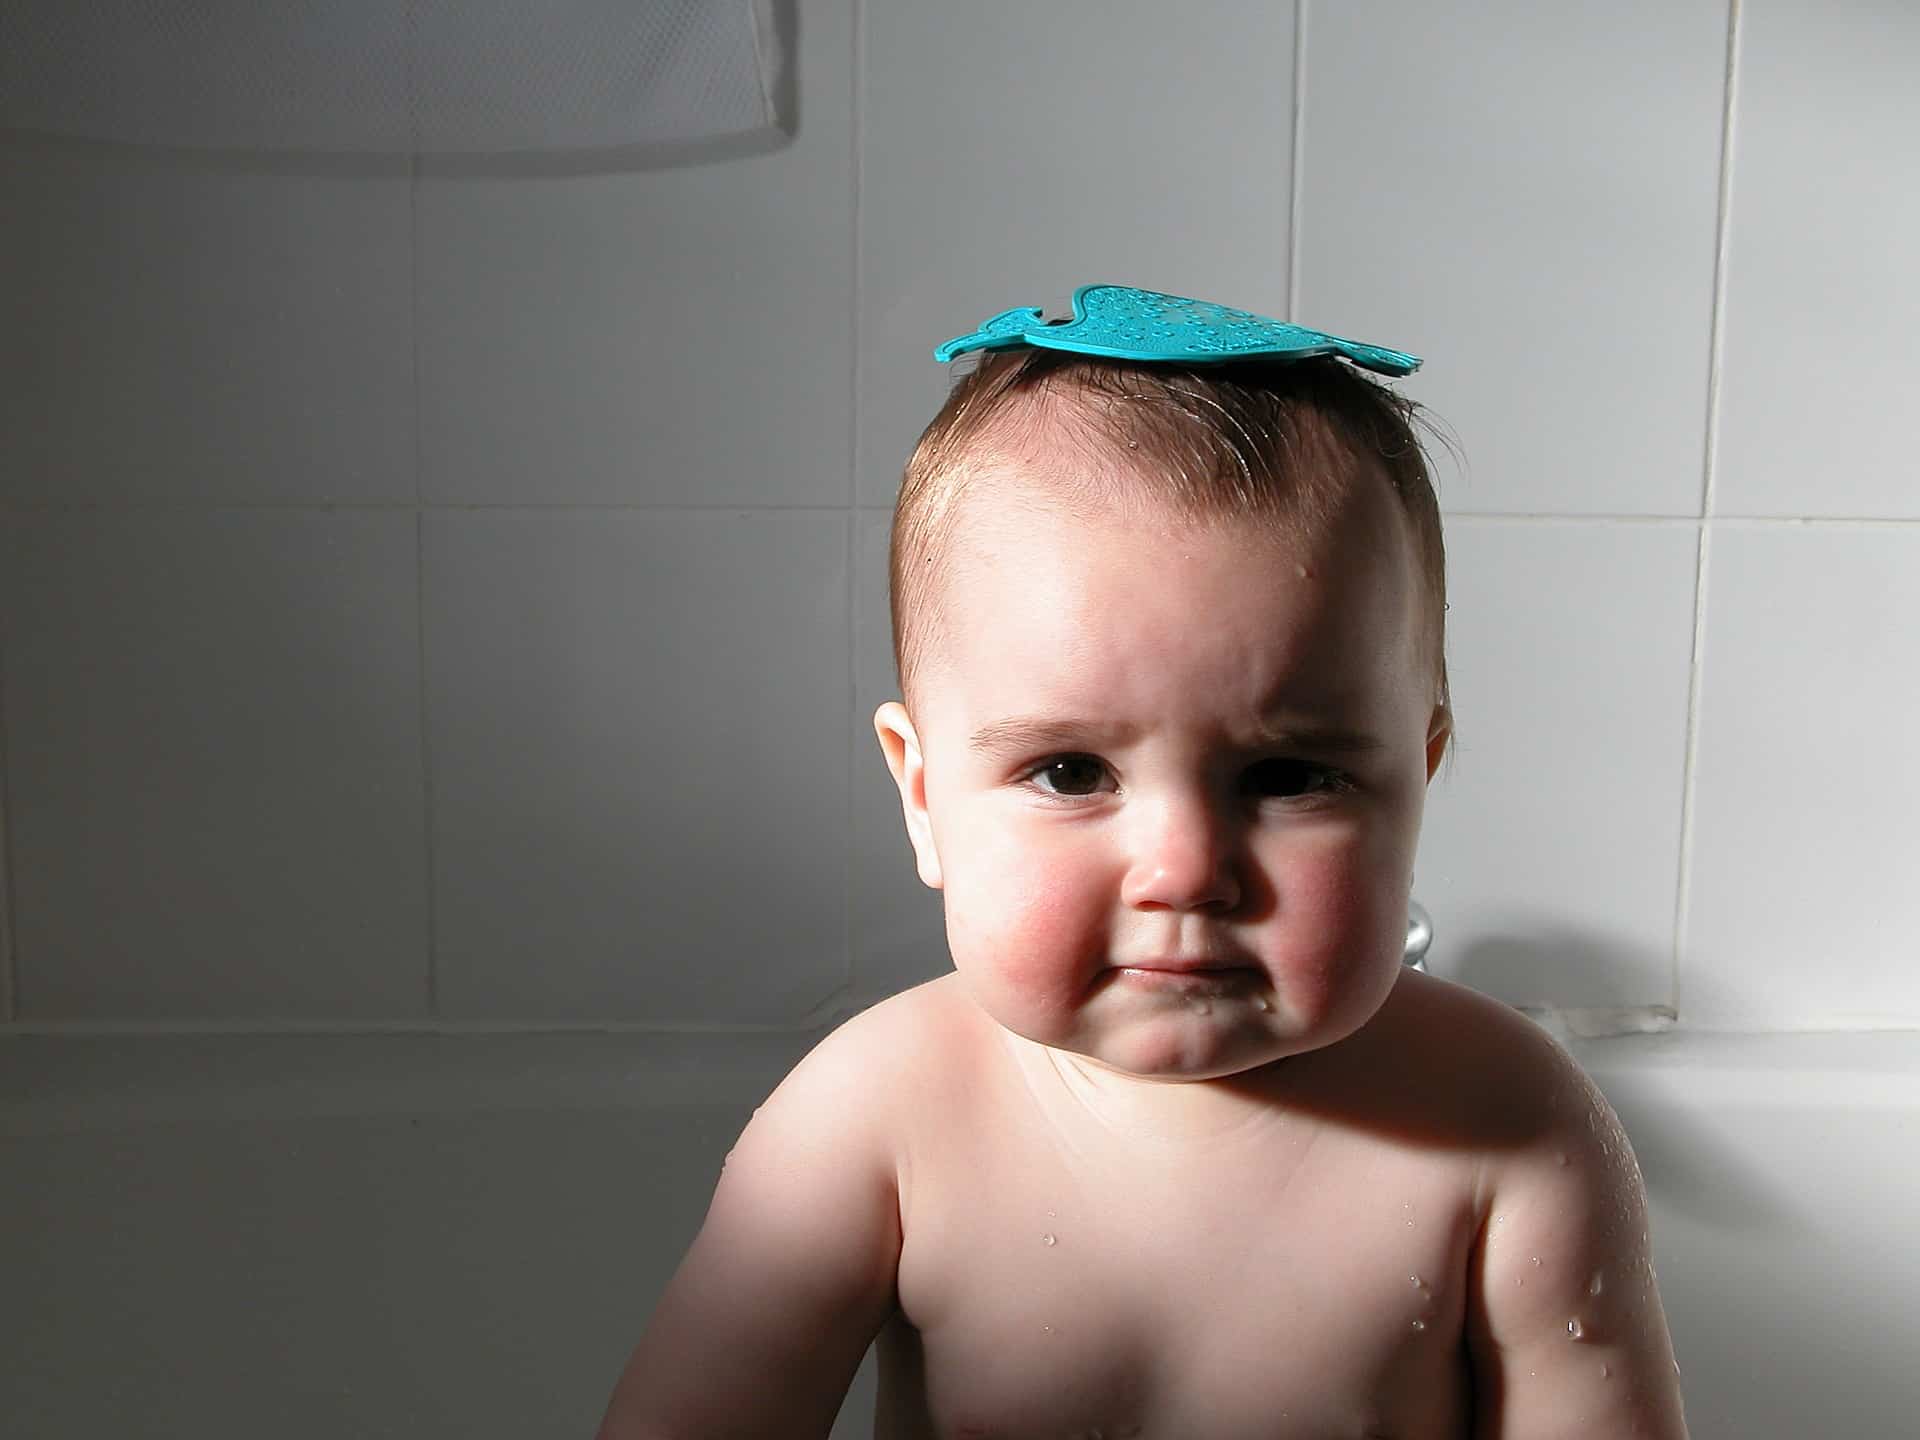 Kid in a bath tub